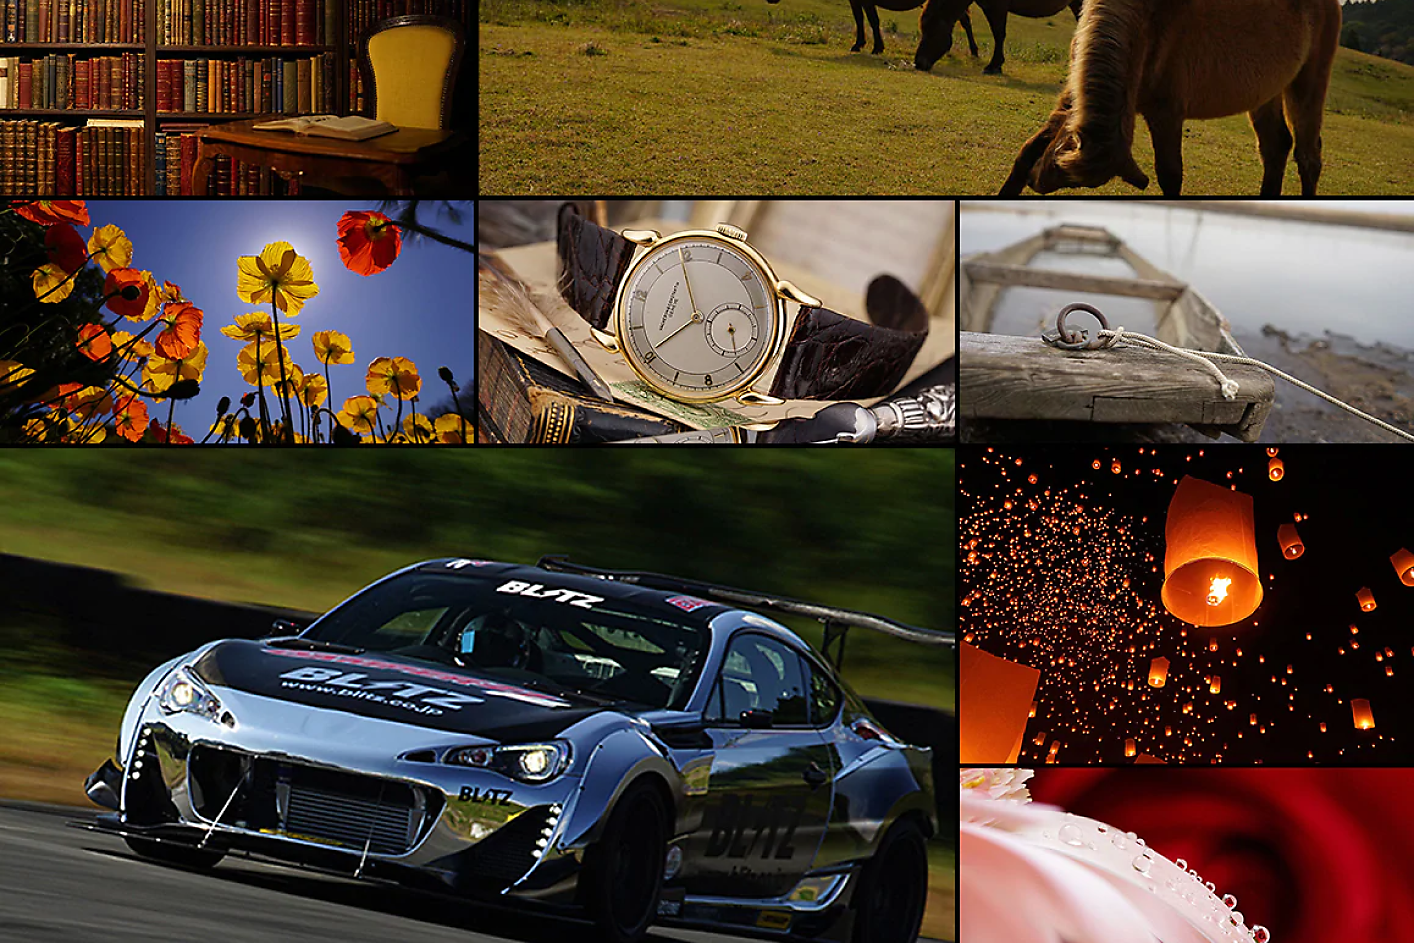 Ảnh ghép đầy màu sắc từ tám hình ảnh, bao gồm một chiếc xe đua, con ngựa, đồng hồ và hoa